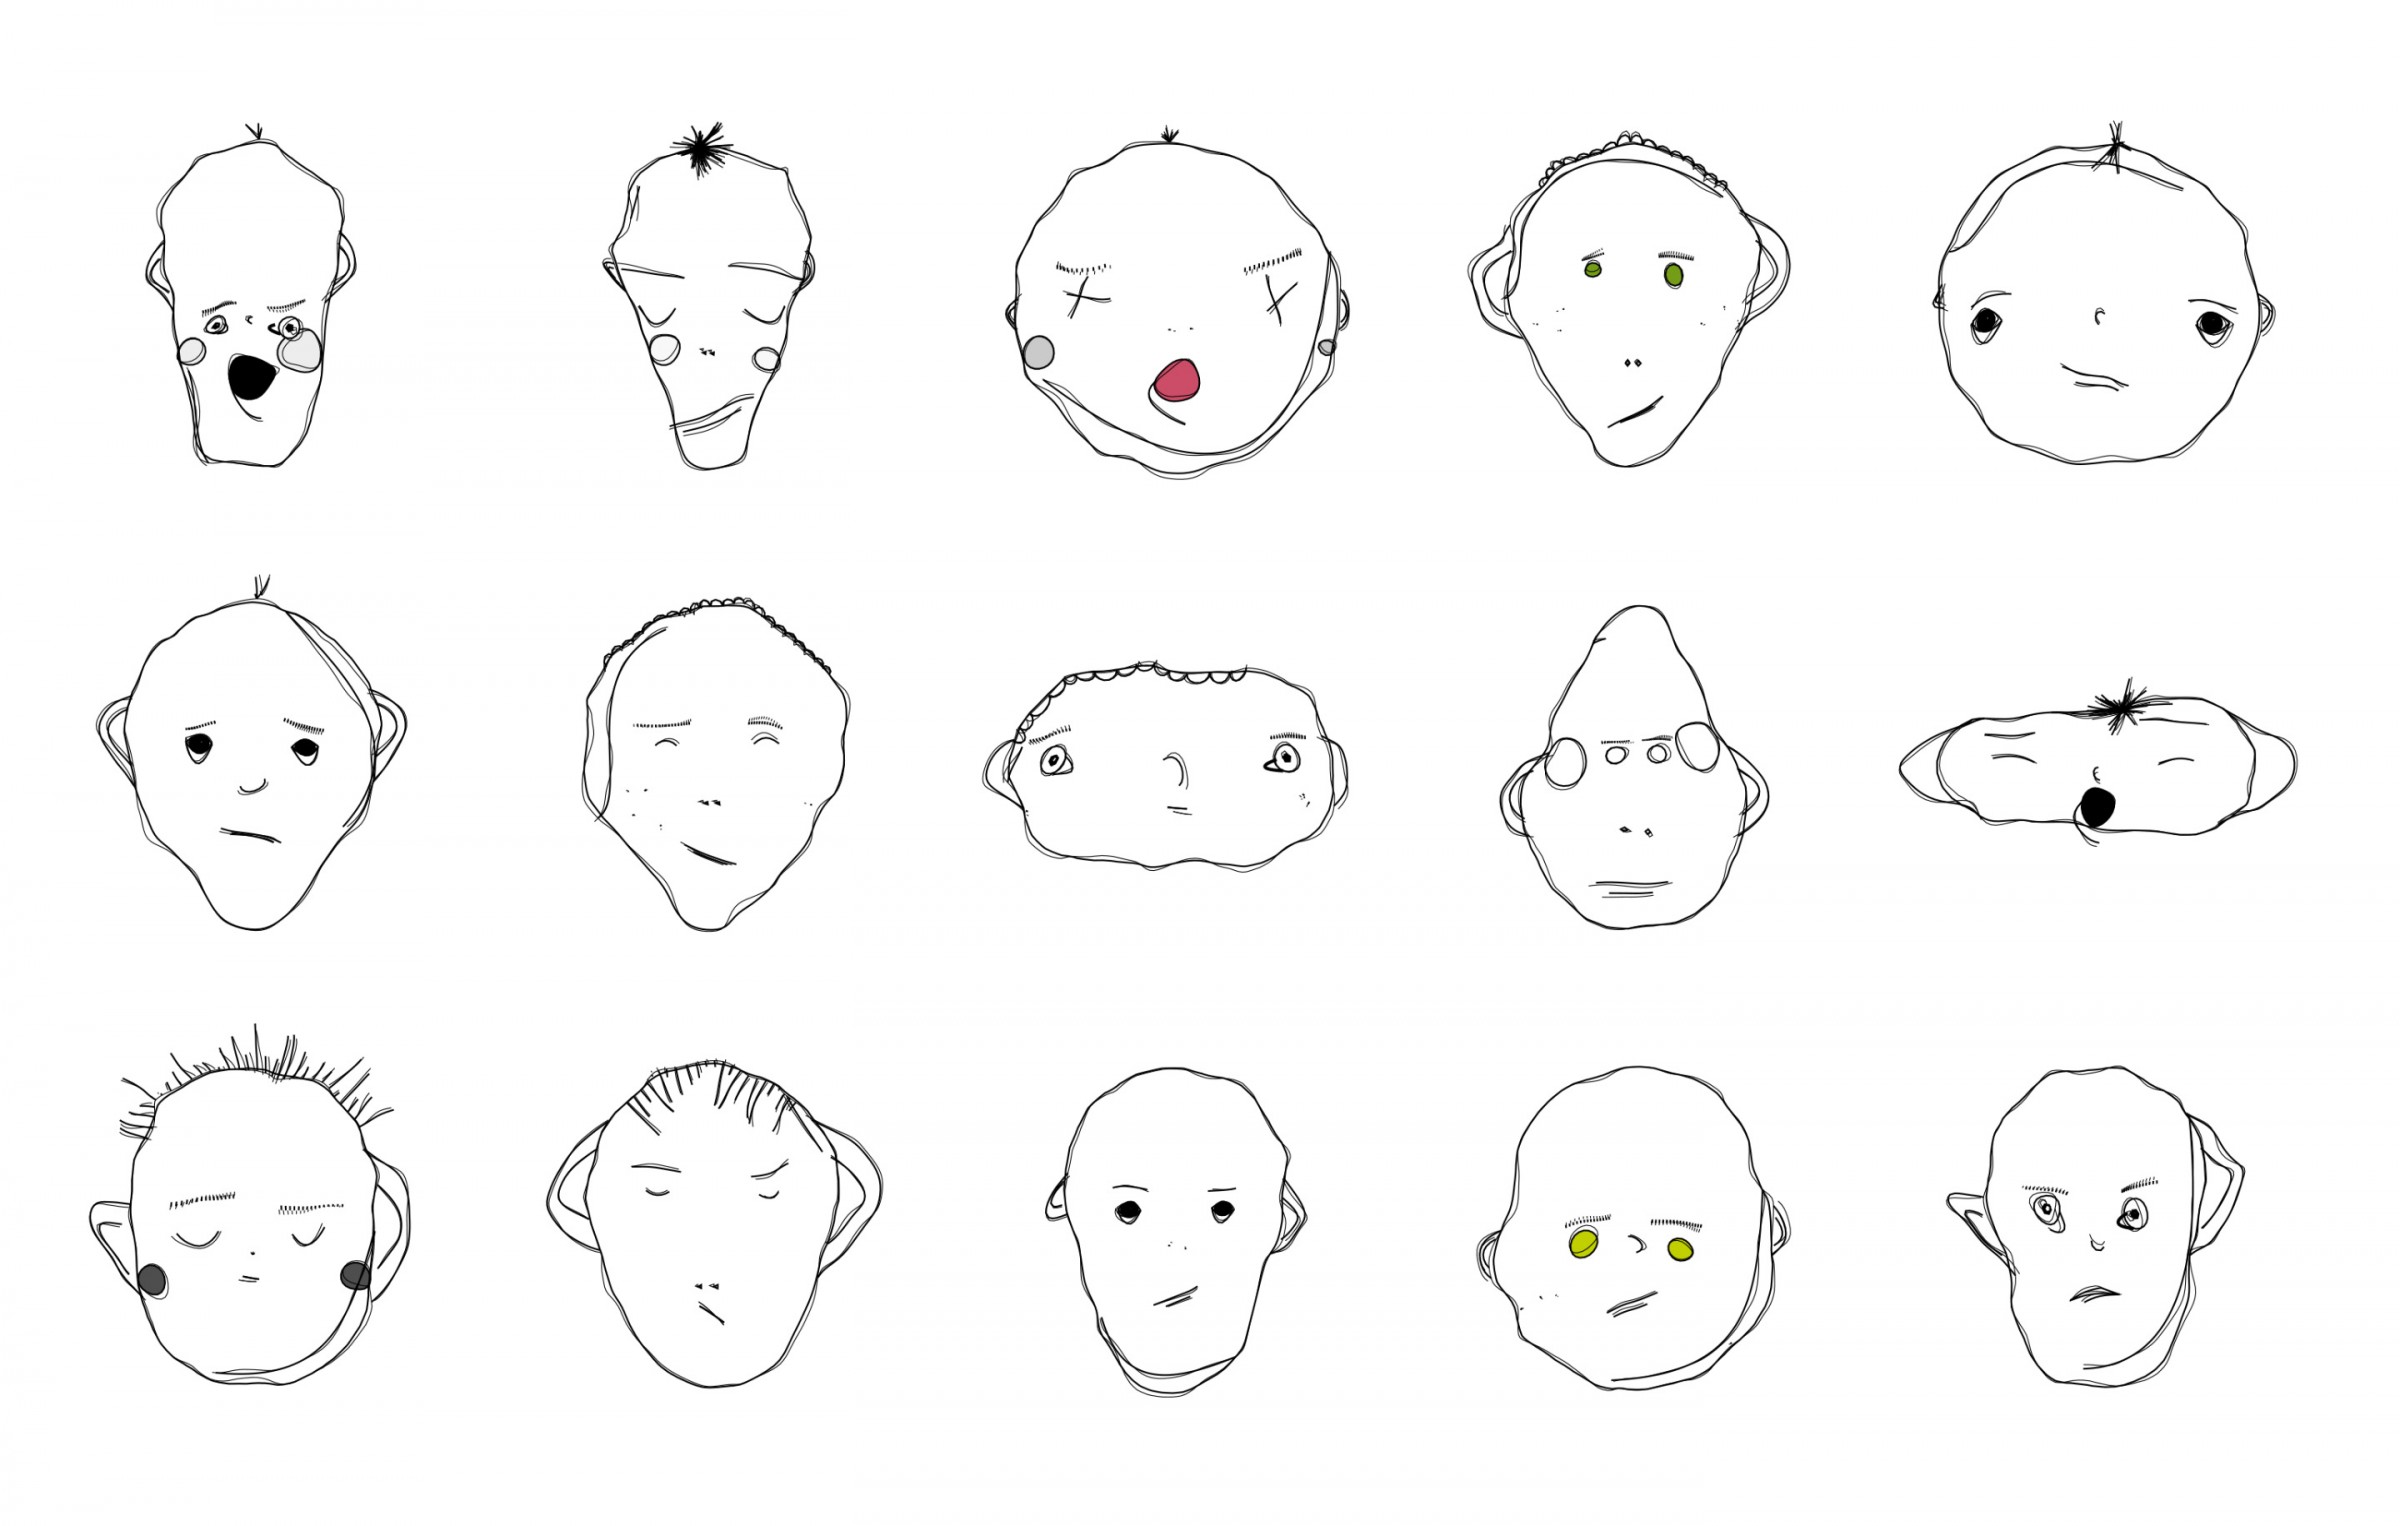 Weird Faces, 2012-13